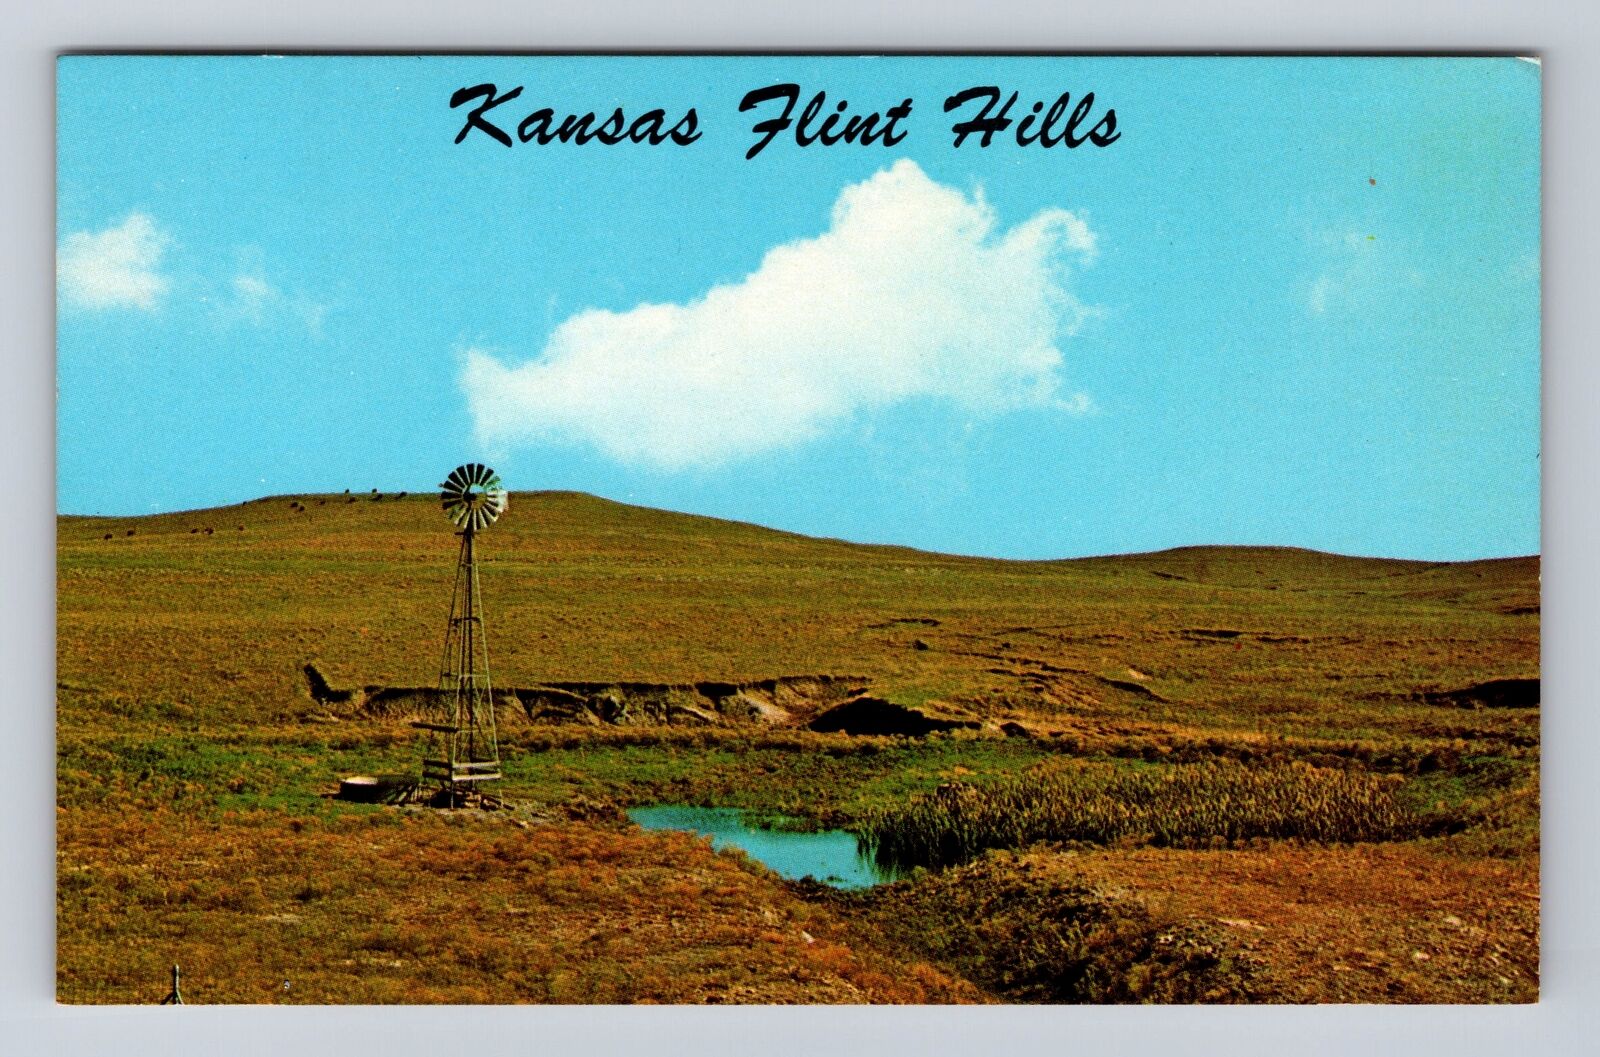 KS-Kansas, Windmill on Flint Hills, Pasture Land, Antique Vintage Postcard